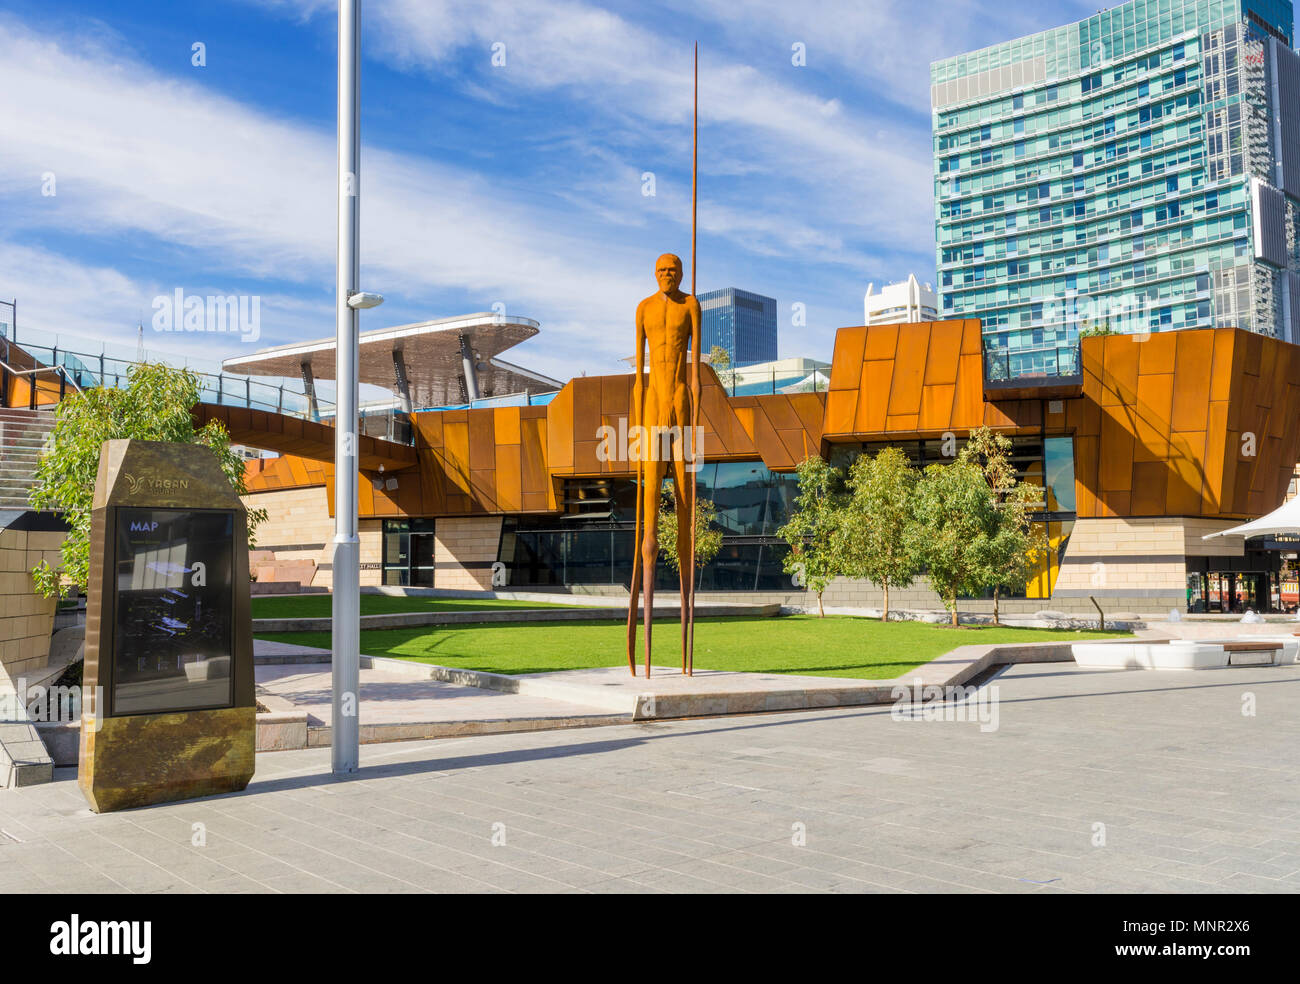 La nouvelle Yagan Square dans le centre-ville de Perth, Australie occidentale, Australie Banque D'Images